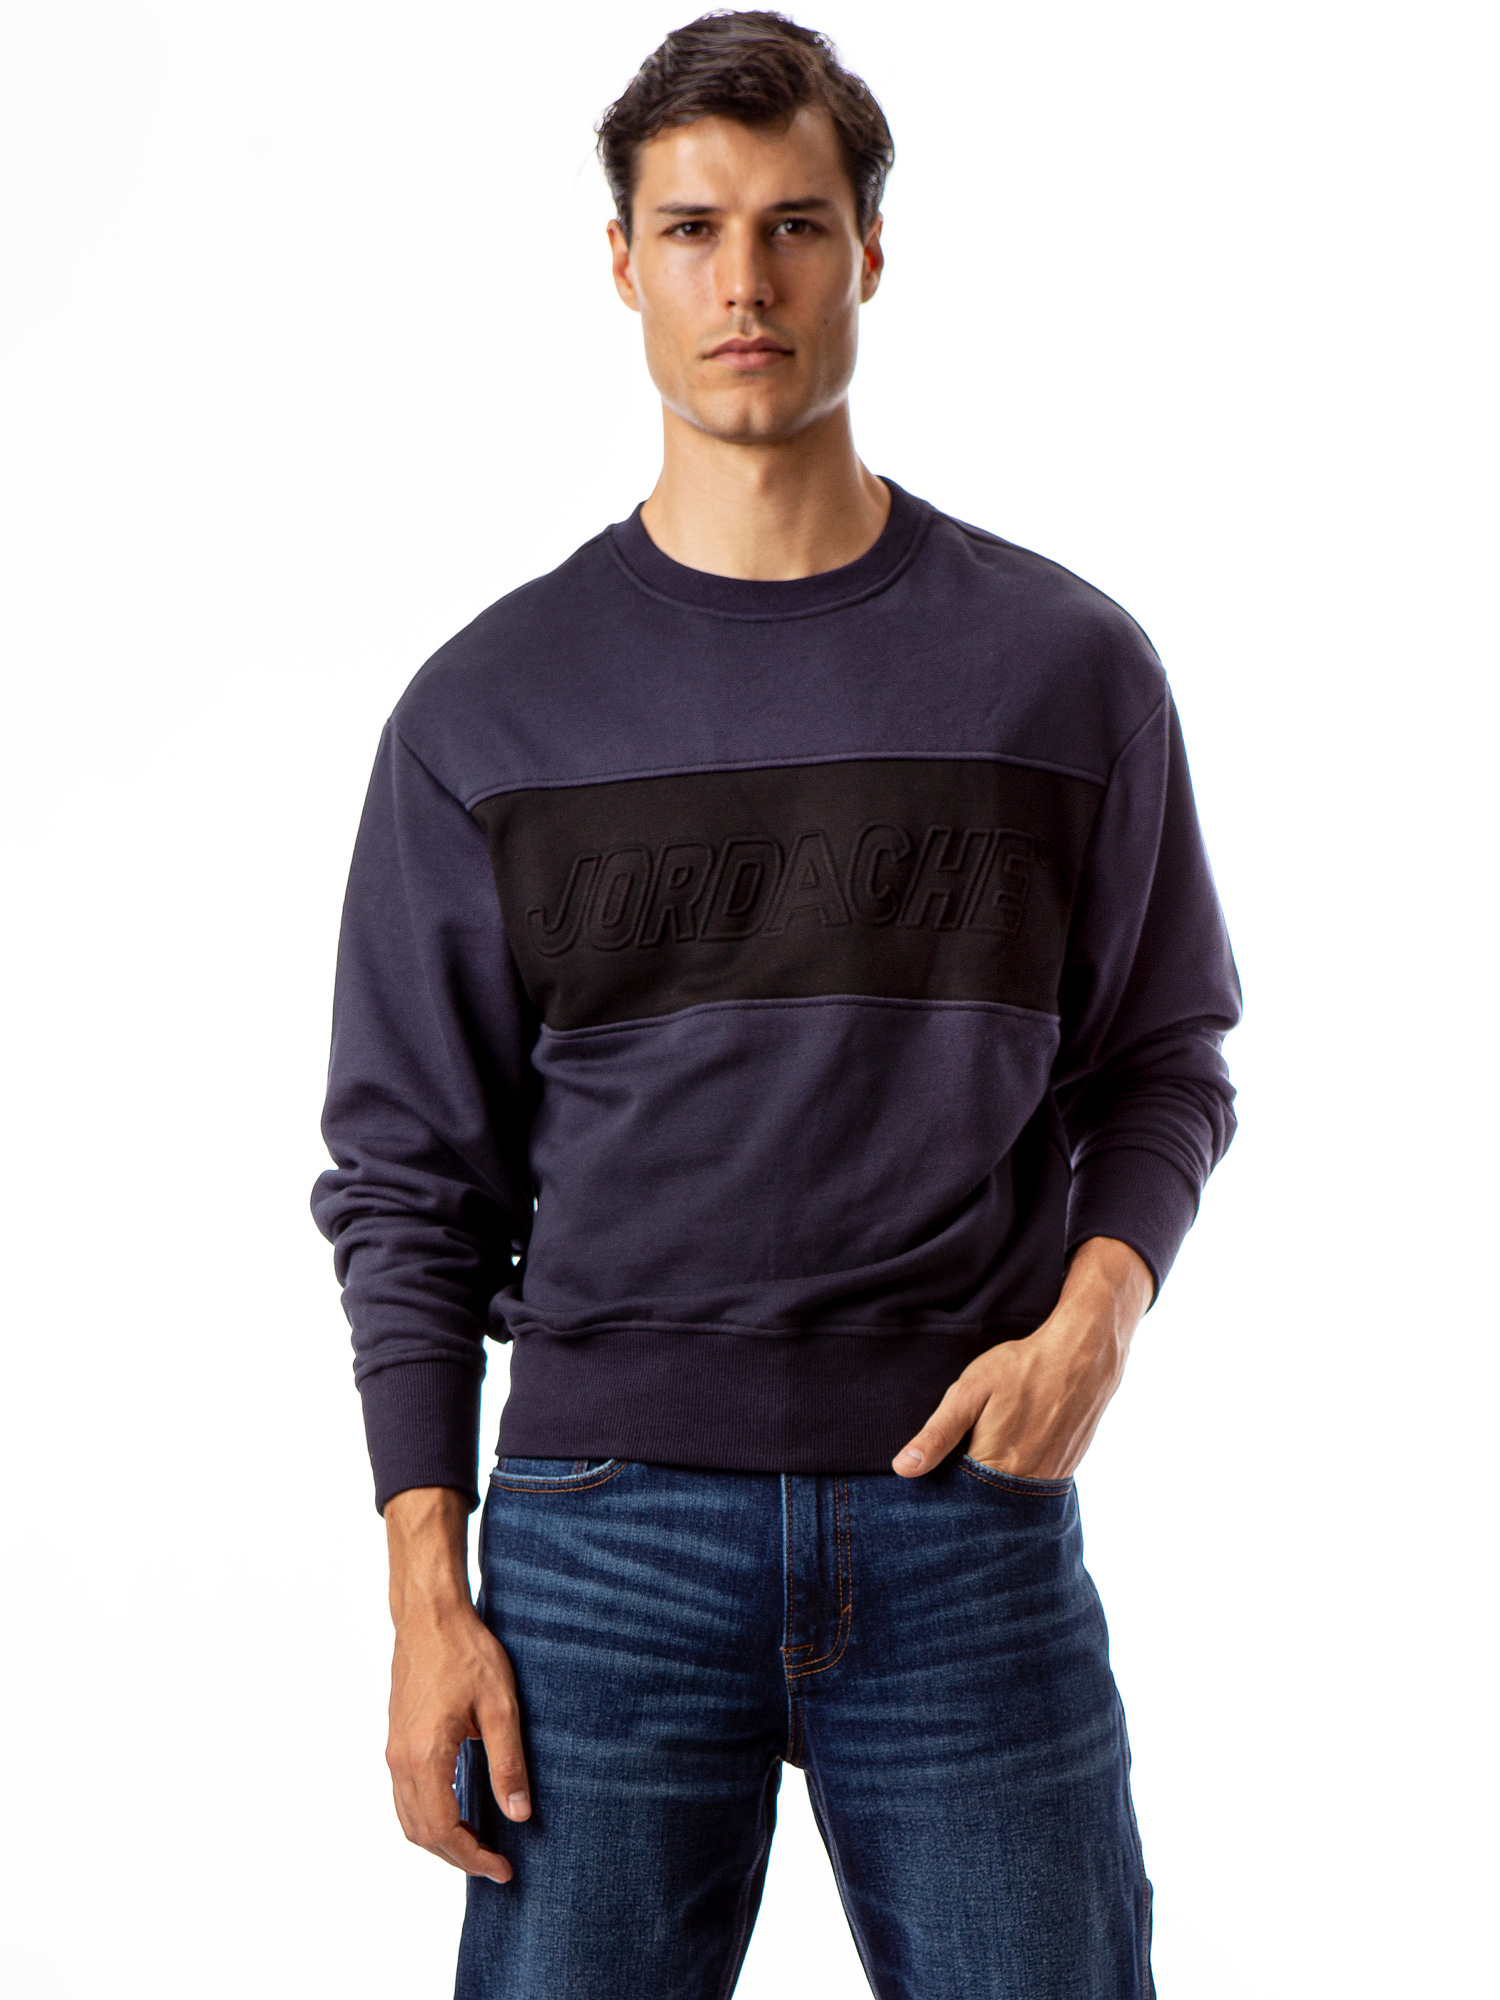 Jordache Vintage Men's Aaron Colorblocked Sweatshirt - image 1 of 5